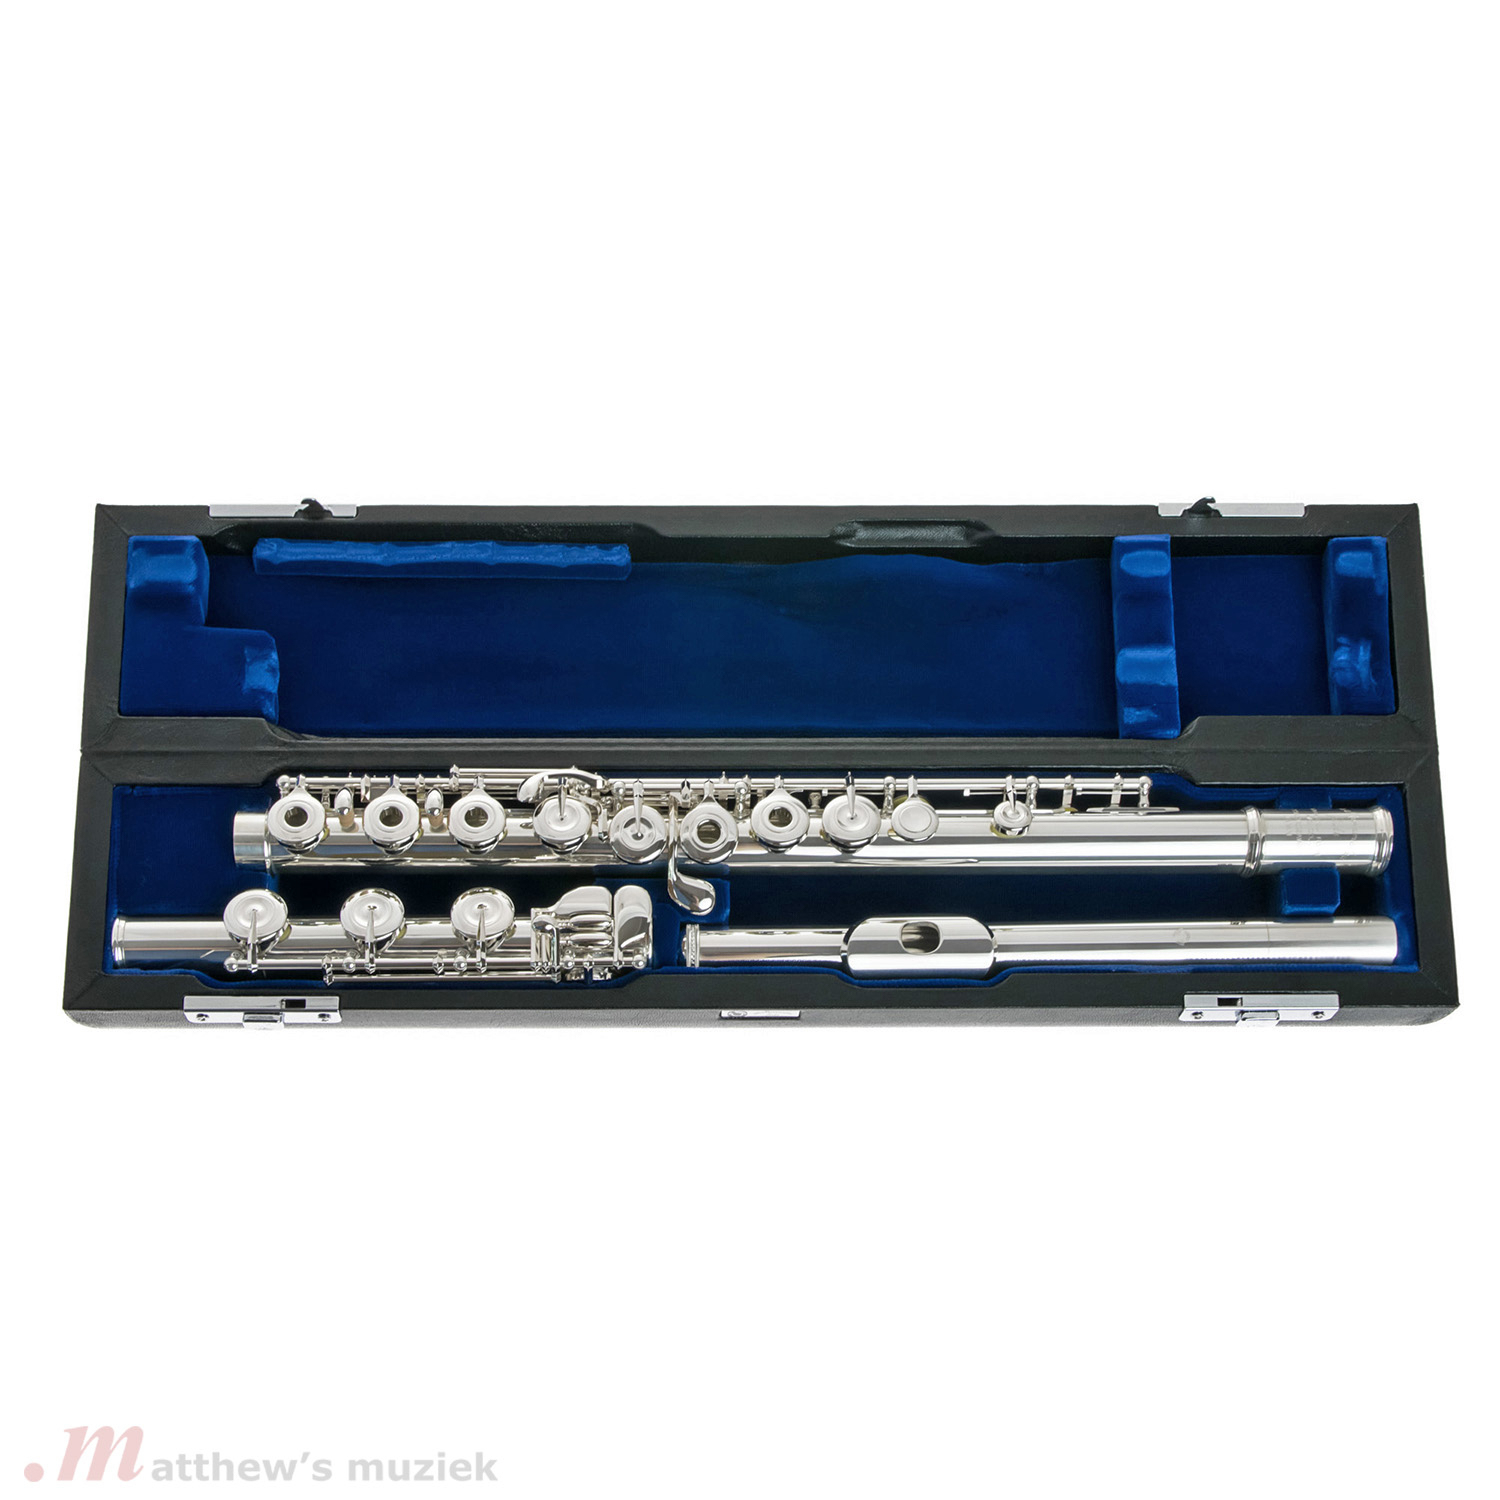 Muramatsu Flute - EX III BE